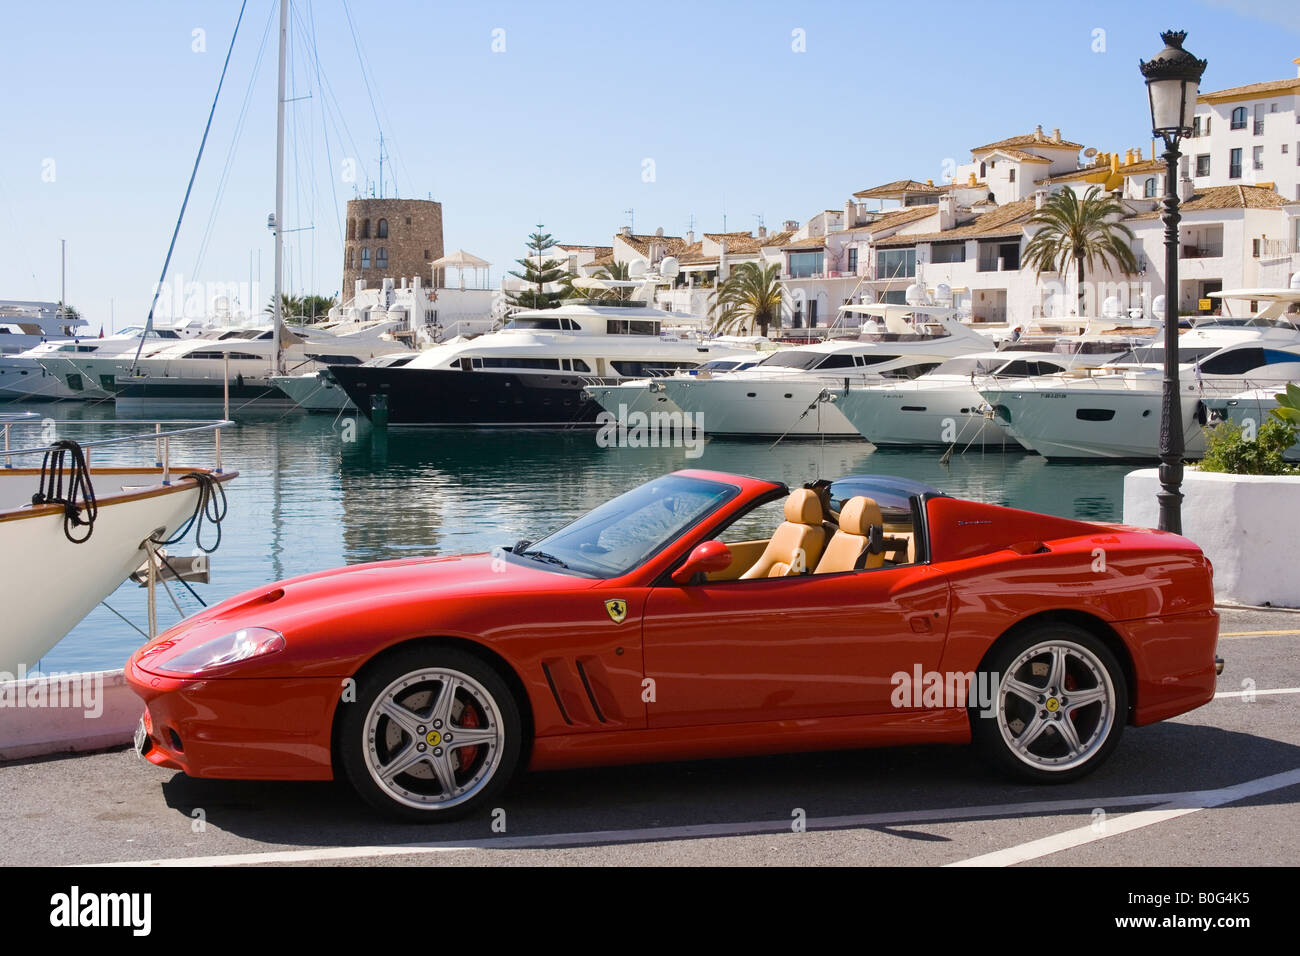 Marbella Costa del Sol Malaga Provinz Spanien Puerto Jose Banus roten Ferrari parkte auf Backbordseite Stockfoto